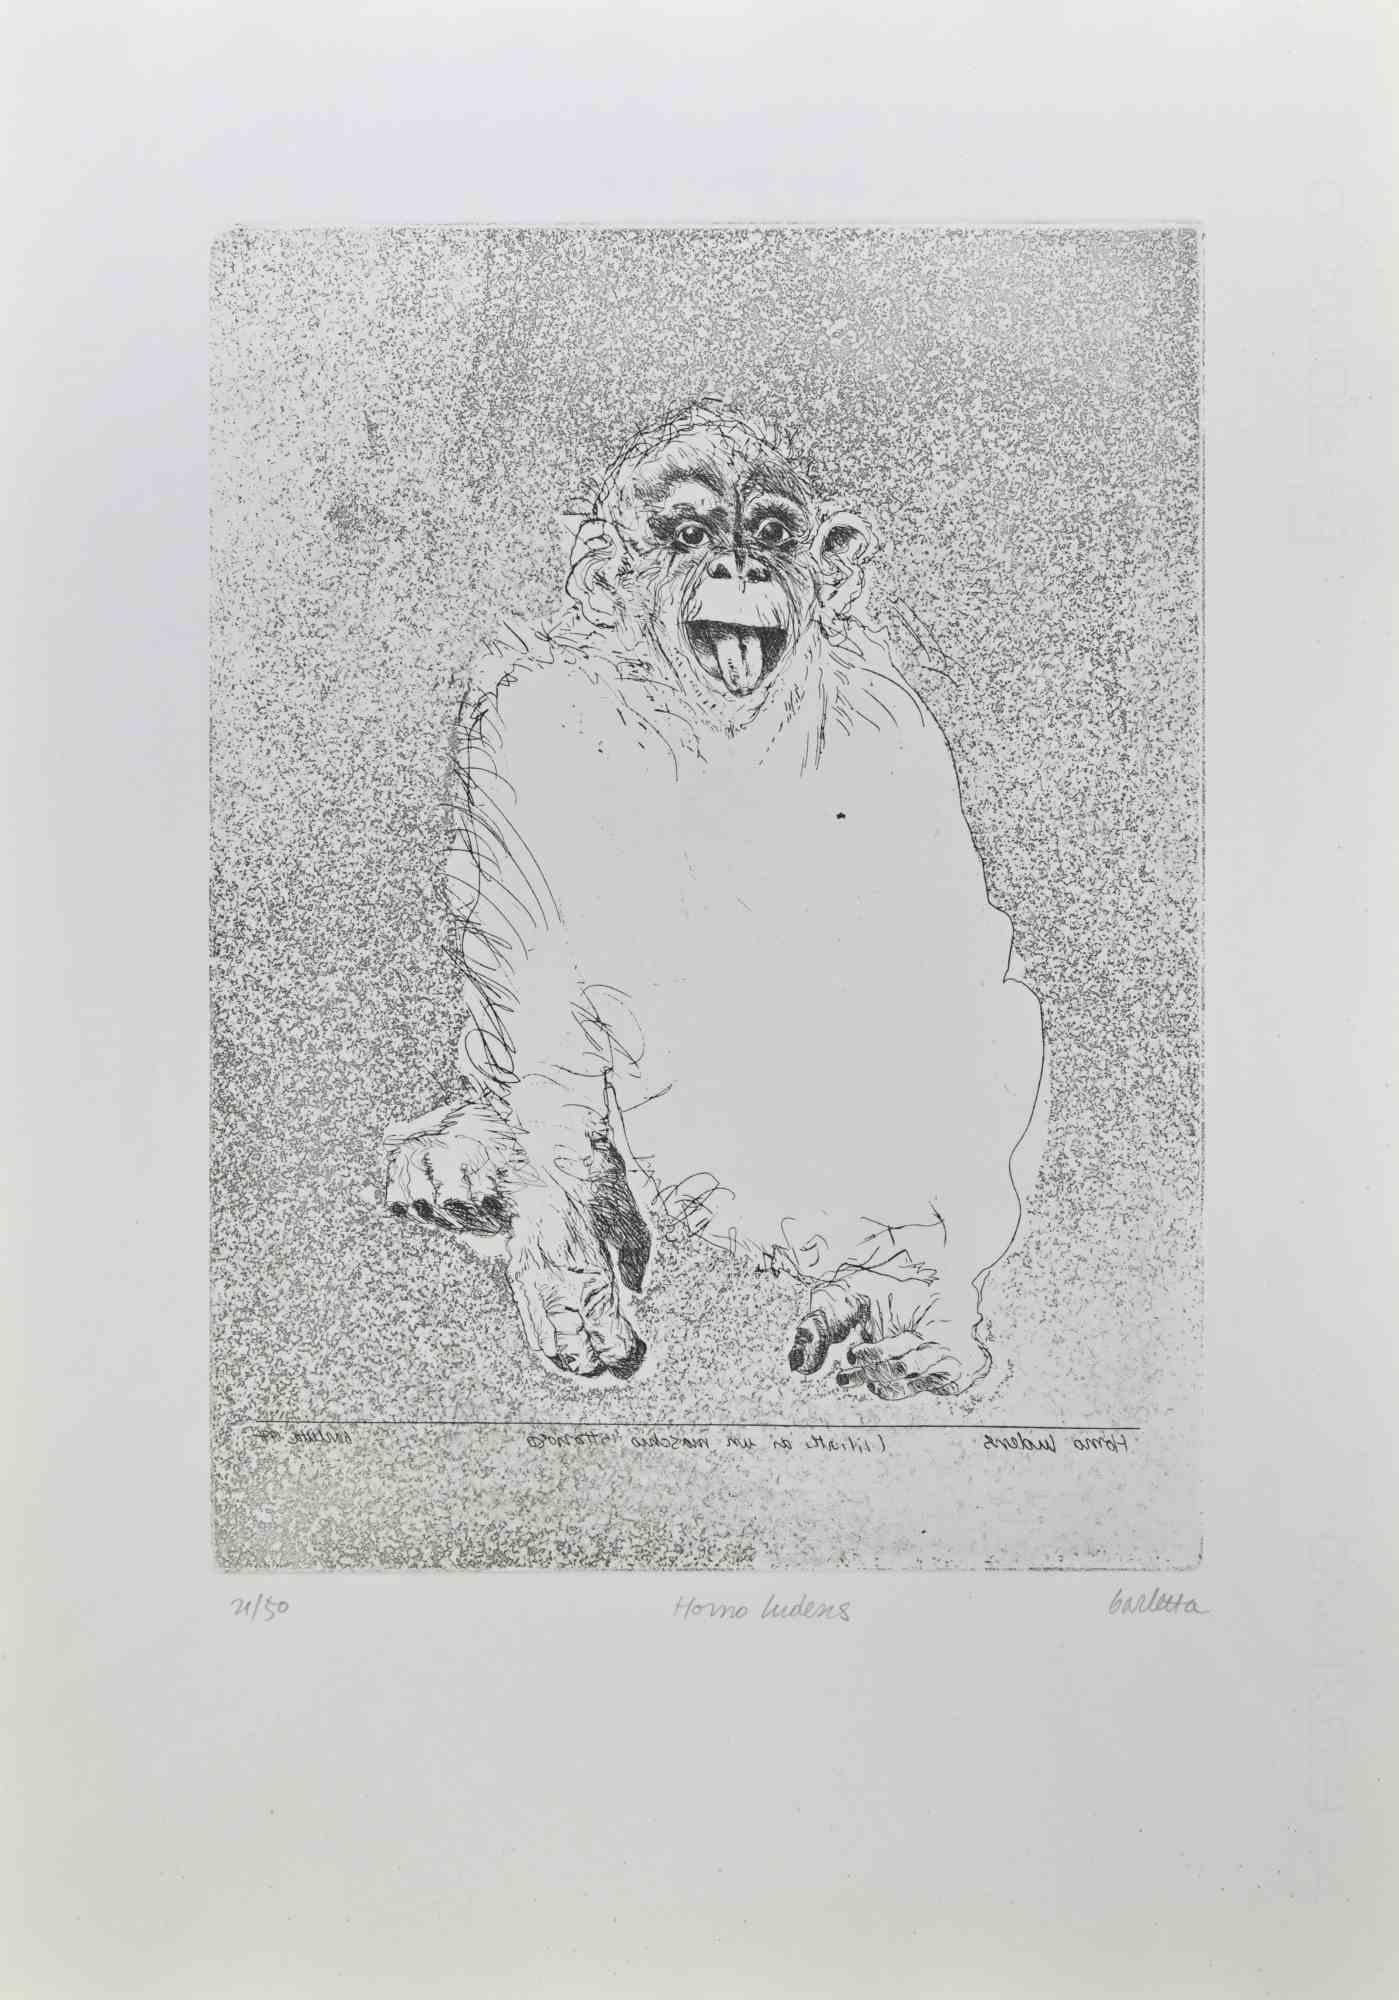 Homo Ludens est une gravure réalisée par Sergio Barletta en 1991.

Signé à la main  en bas à droite au crayon, et titré en bas au centre "Homo Ludens". Numérotée en bas à gauche, issue d'une édition de 50 tirages.

Bonnes conditions.

Sergio